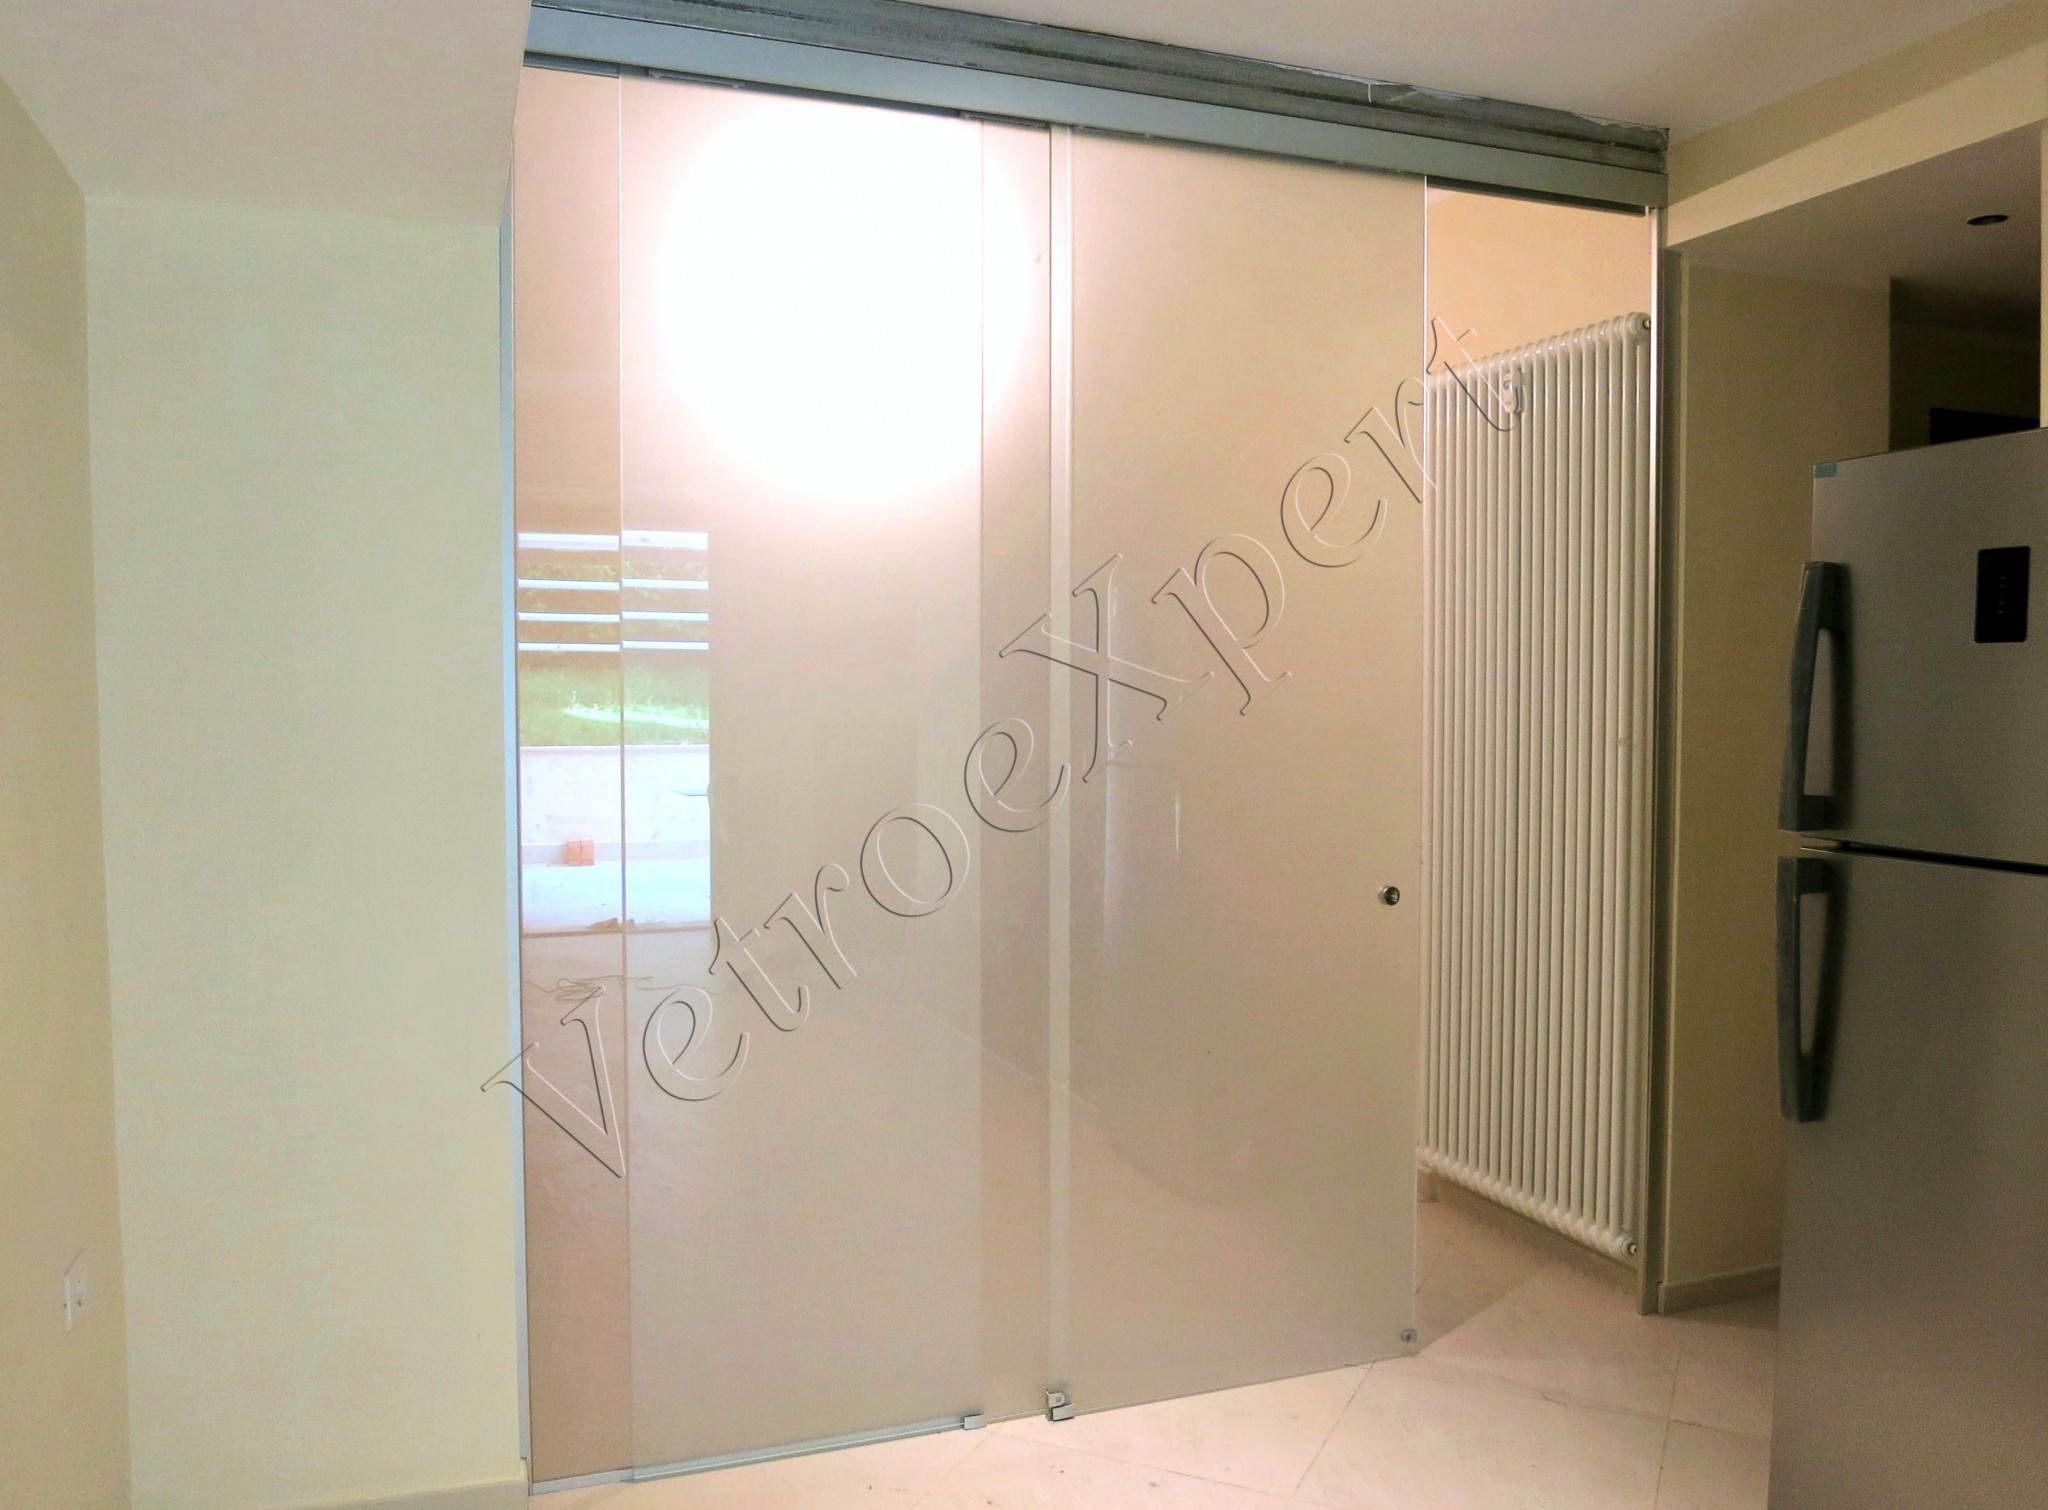 Porte in vetro su misura e pareti divisorie vetroexpert for Pareti divisorie in vetro per interni casa prezzi